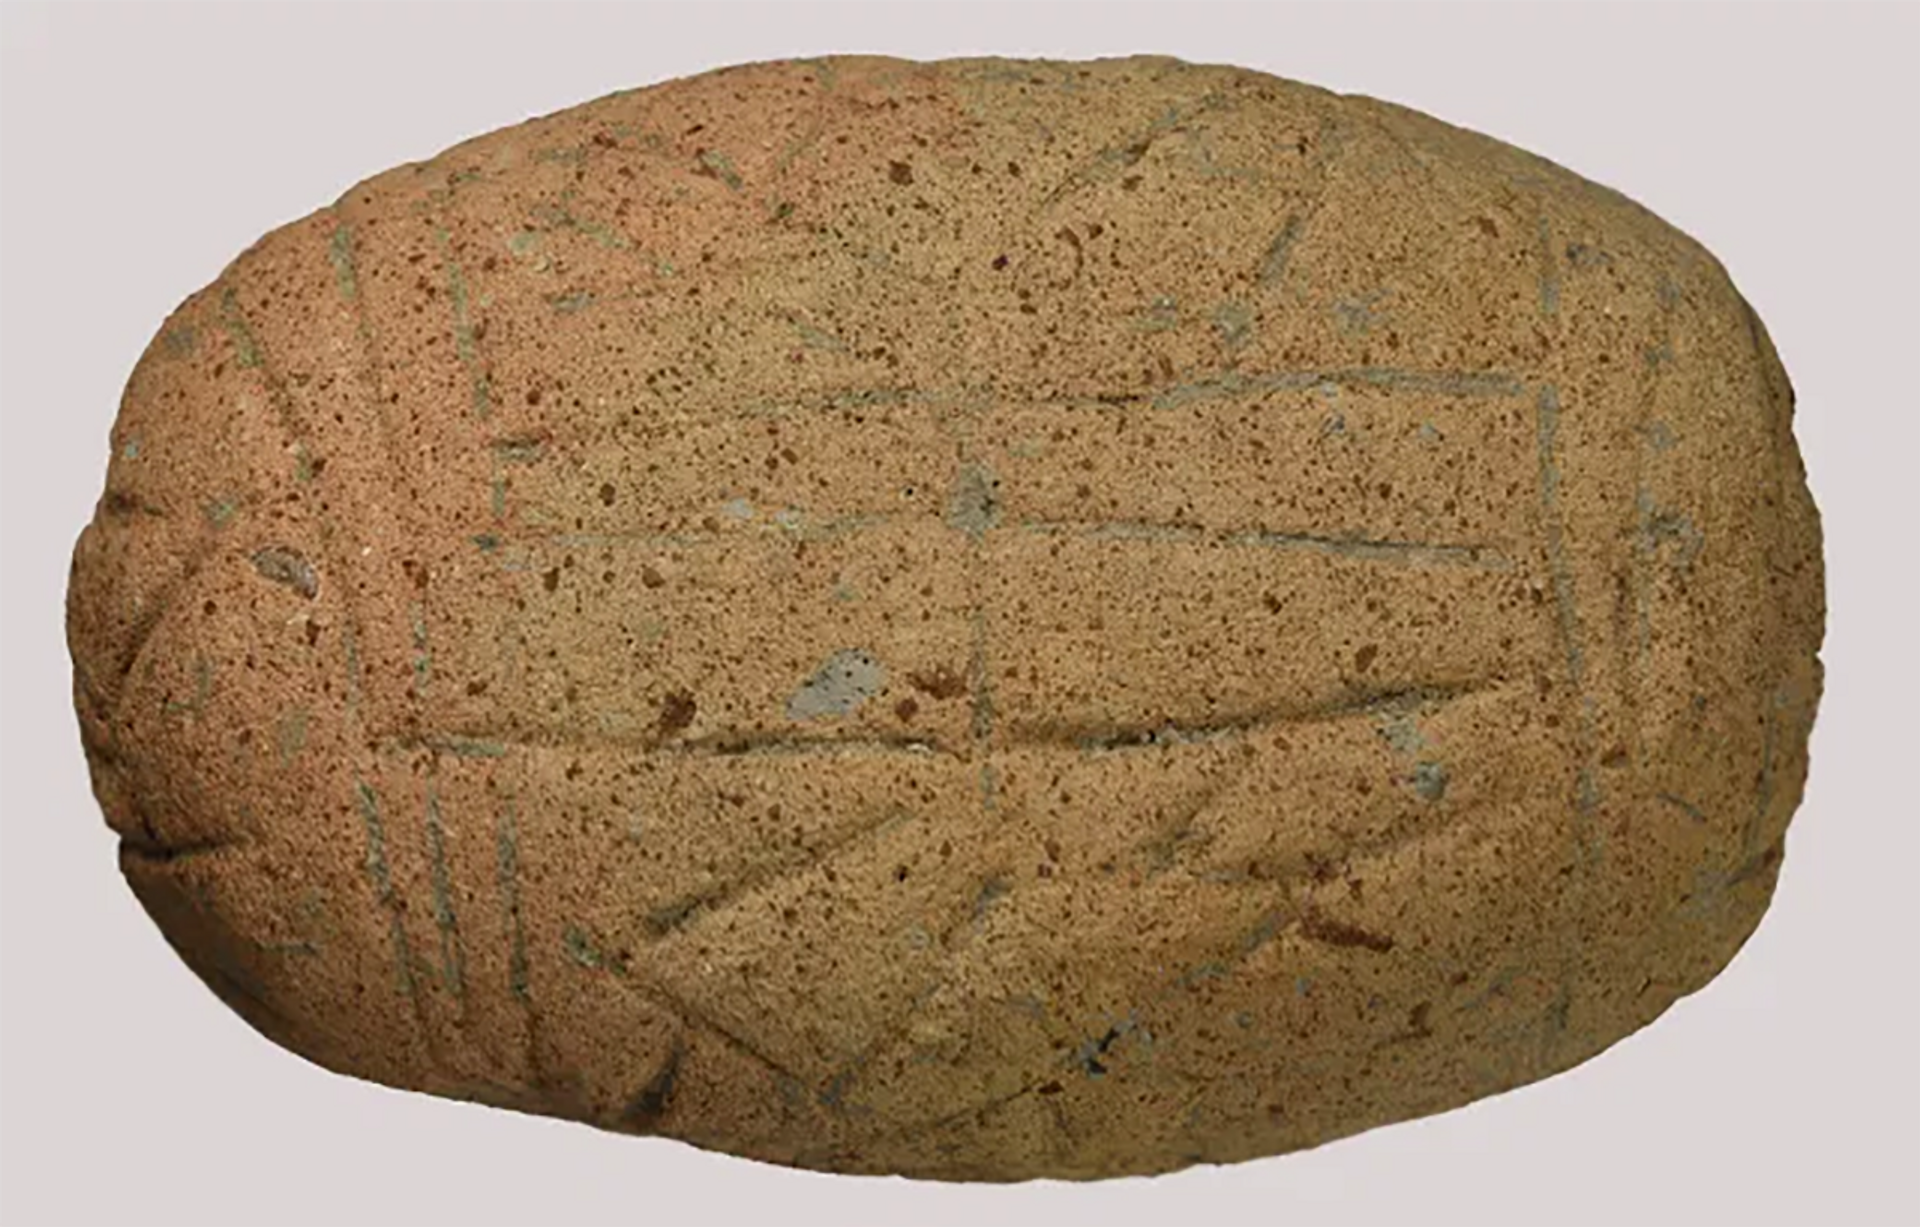 Descoberta na Bulgária placa de barro de 7 mil anos com 'escrita pré-alfabética' (FOTO) - Sputnik Brasil, 1920, 28.03.2021